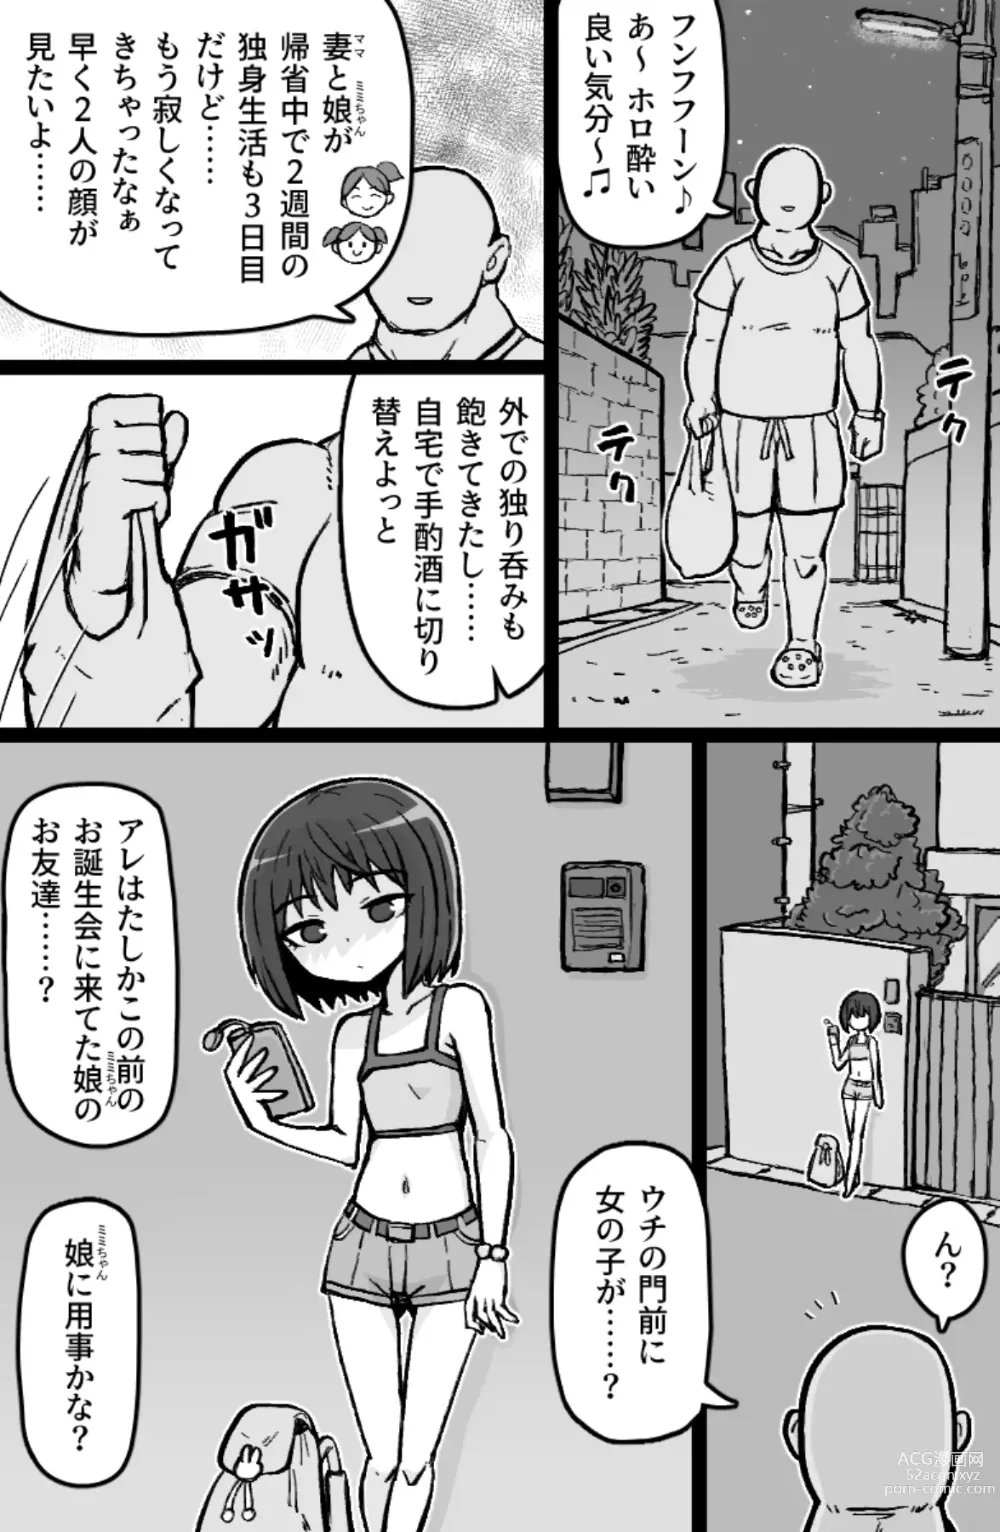 Page 2 of doujinshi Jonokuchi Replay